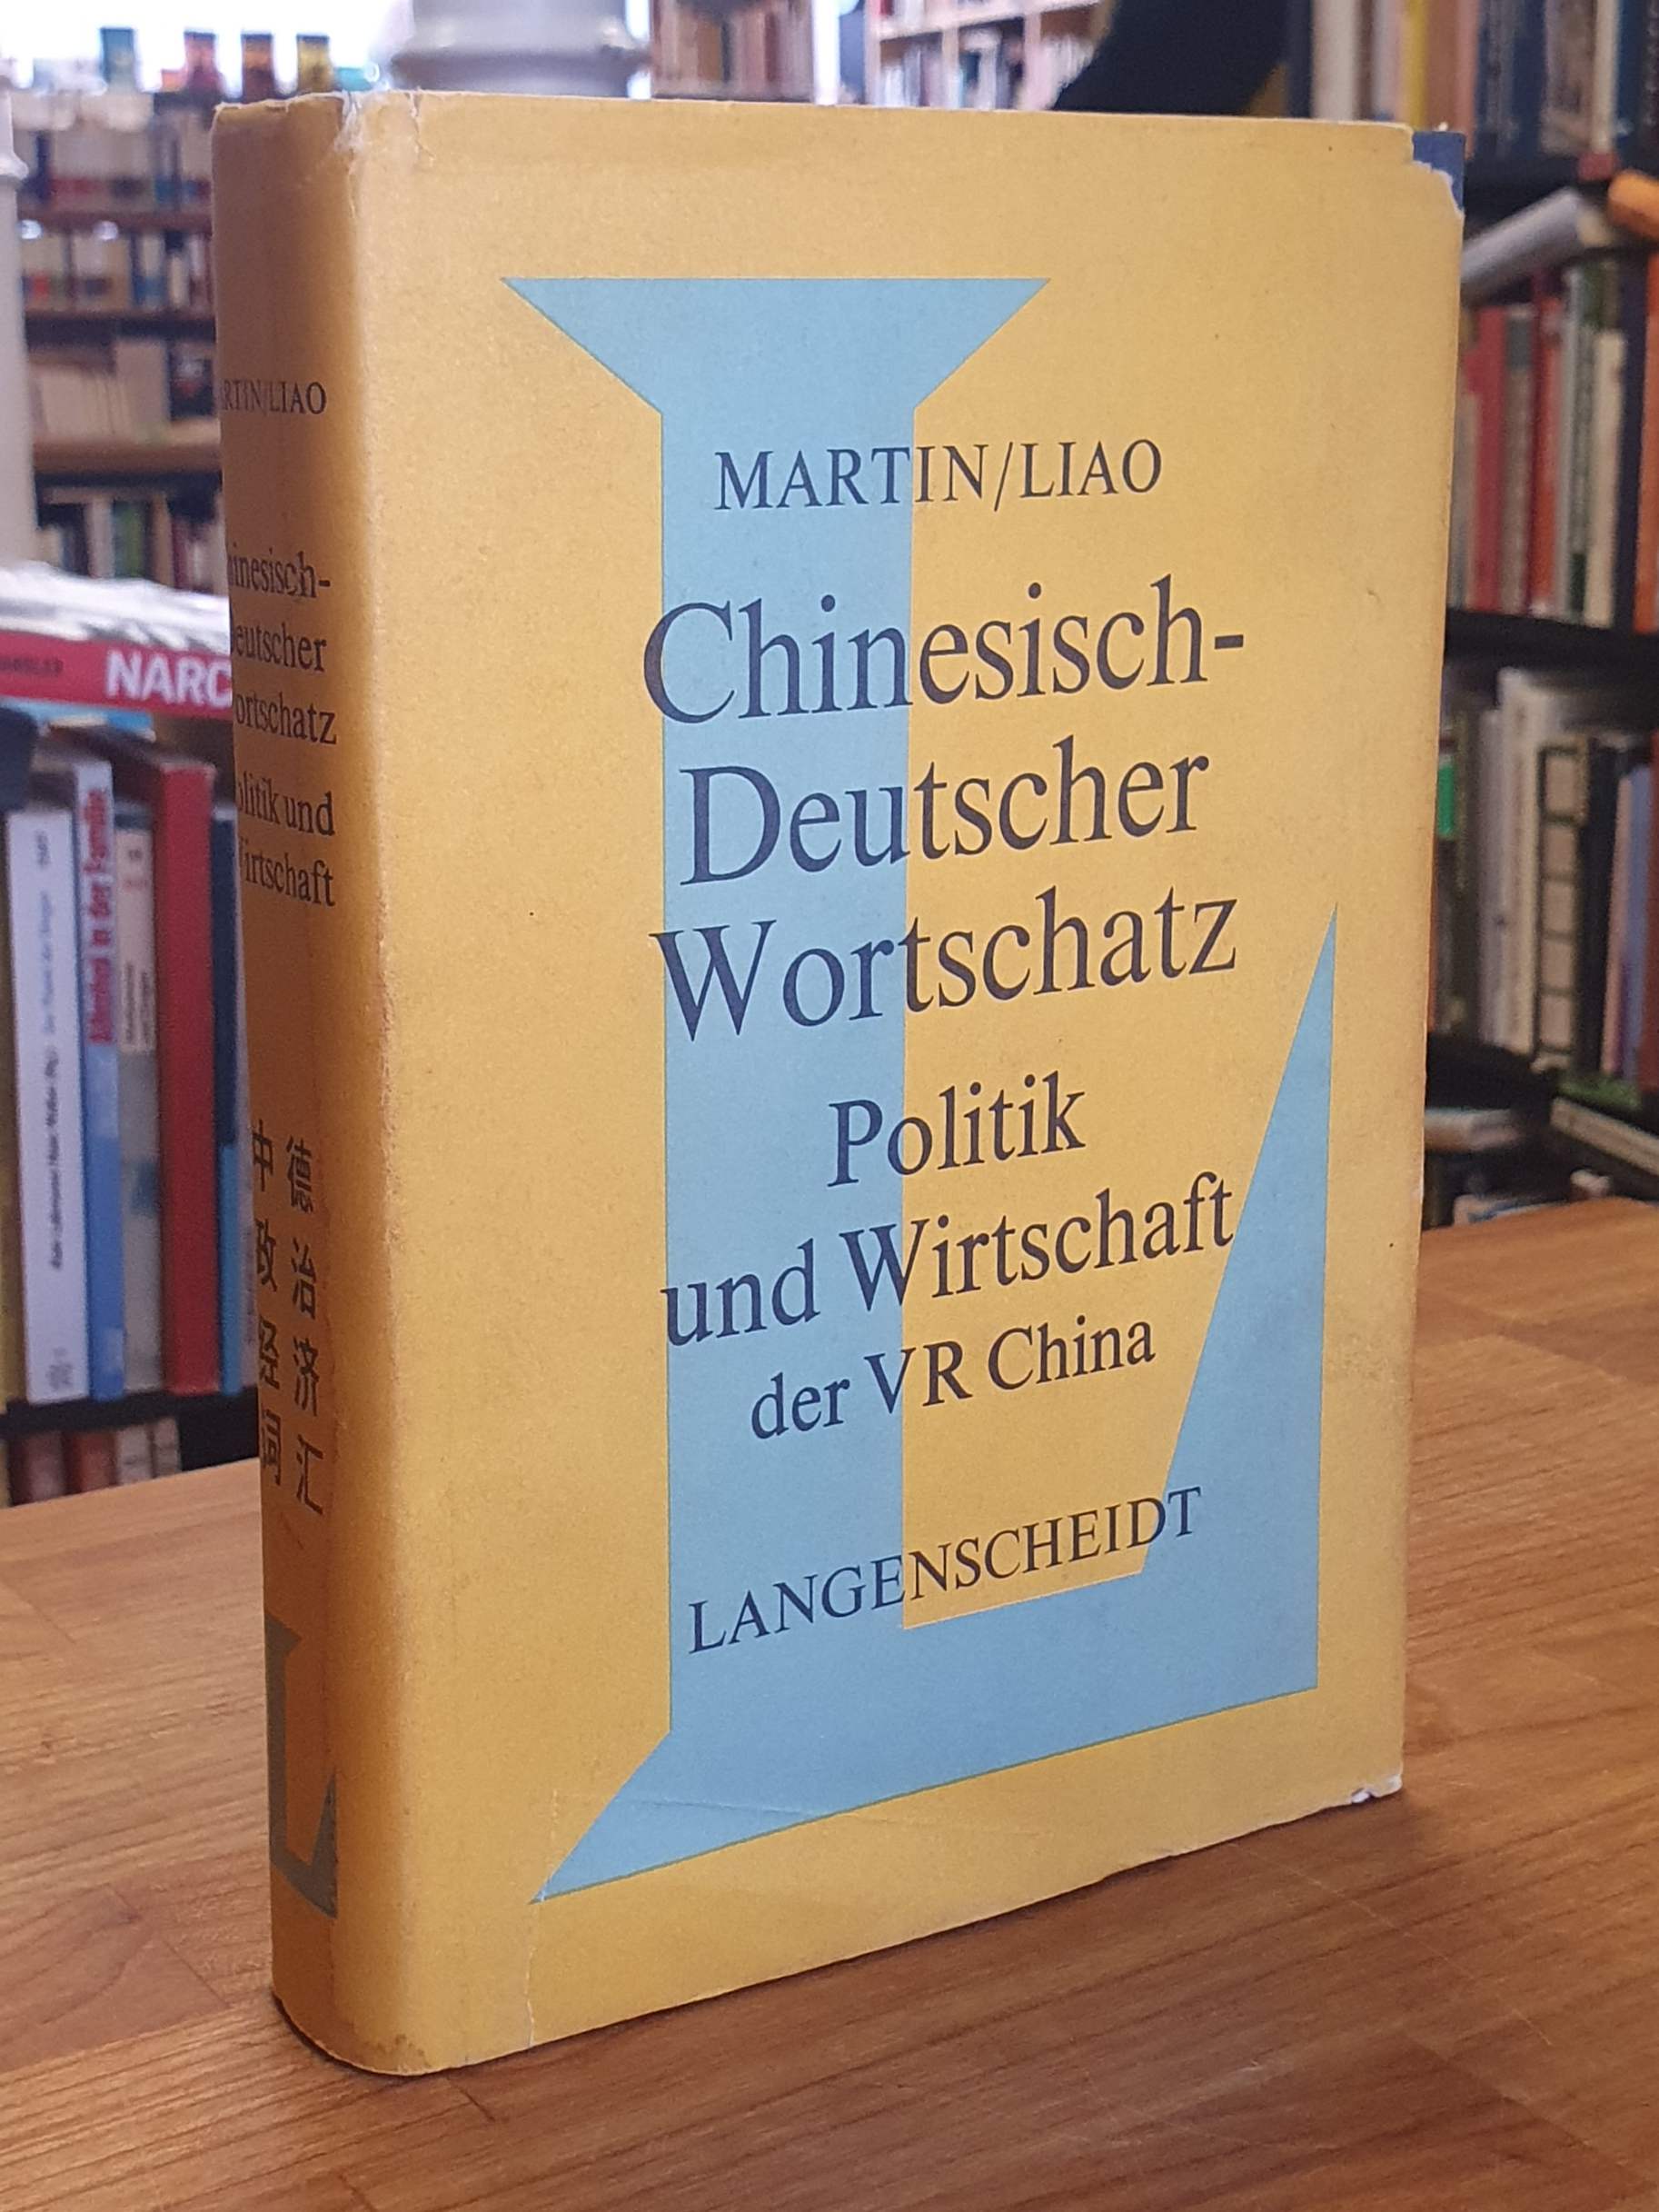 Chinesisch-deutscher Wortschatz - Politik und Wirtschaft der VR China, - Chinesisch / Helmut Martin / Tienchi Martin-Liao,